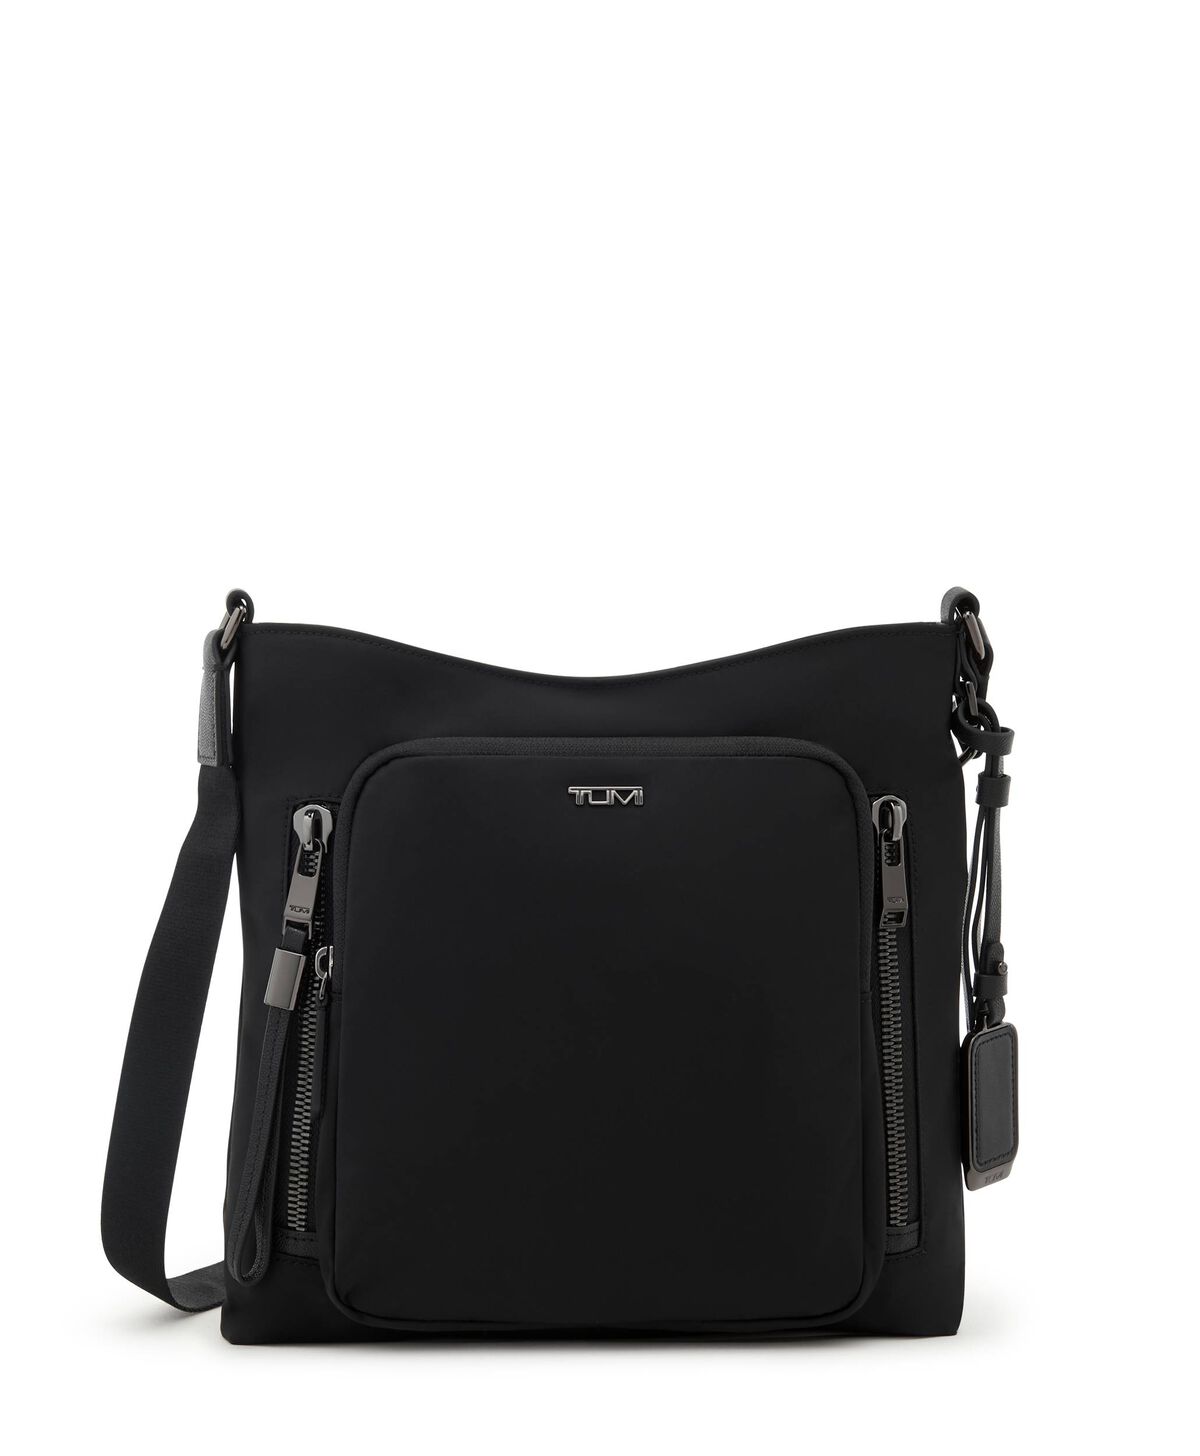 DKNY Bryant Crossbody Bag - Black Size